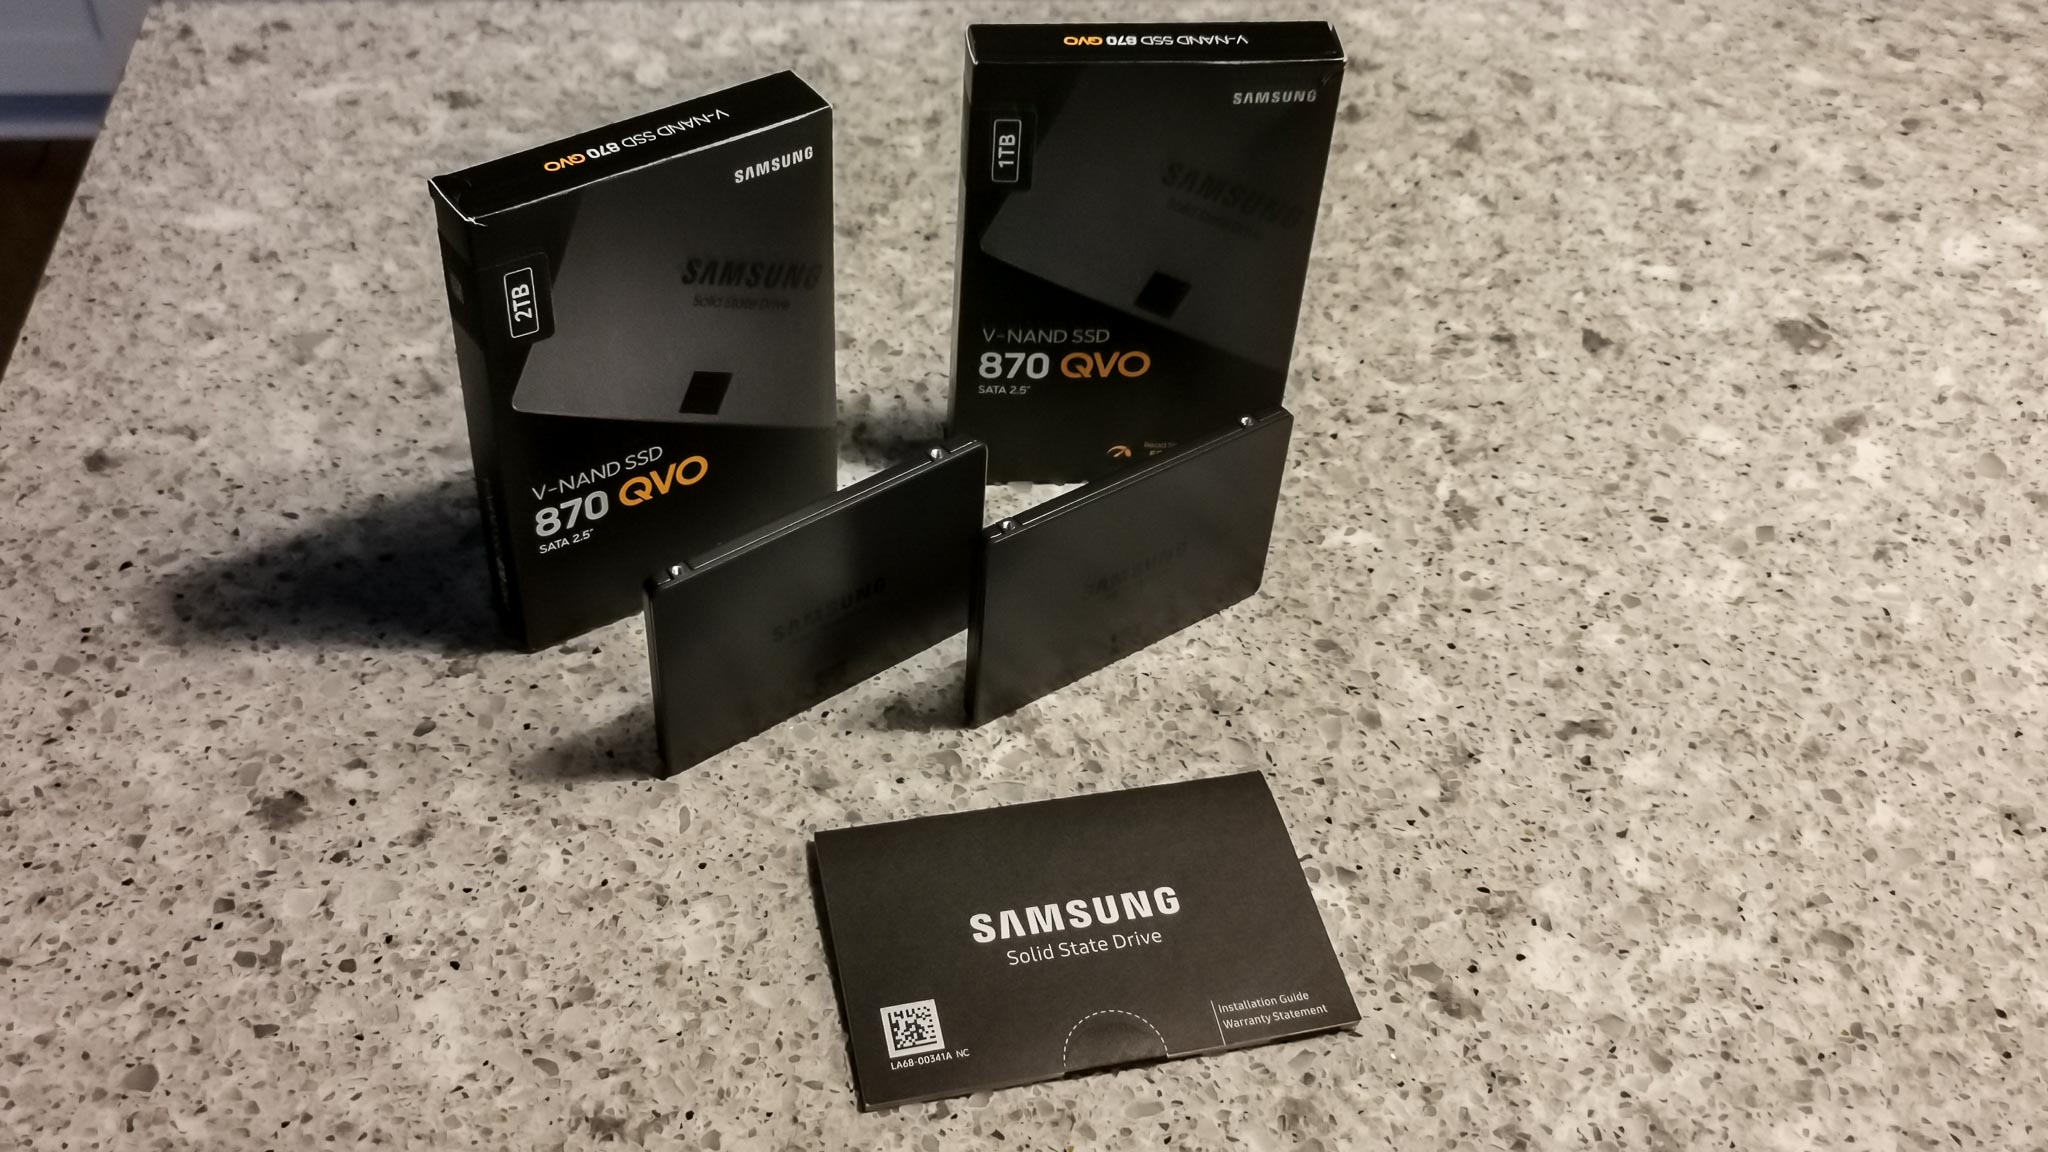 Samsung 870 QVO V-NAND SATA 3 SSD Review (1/2TB)